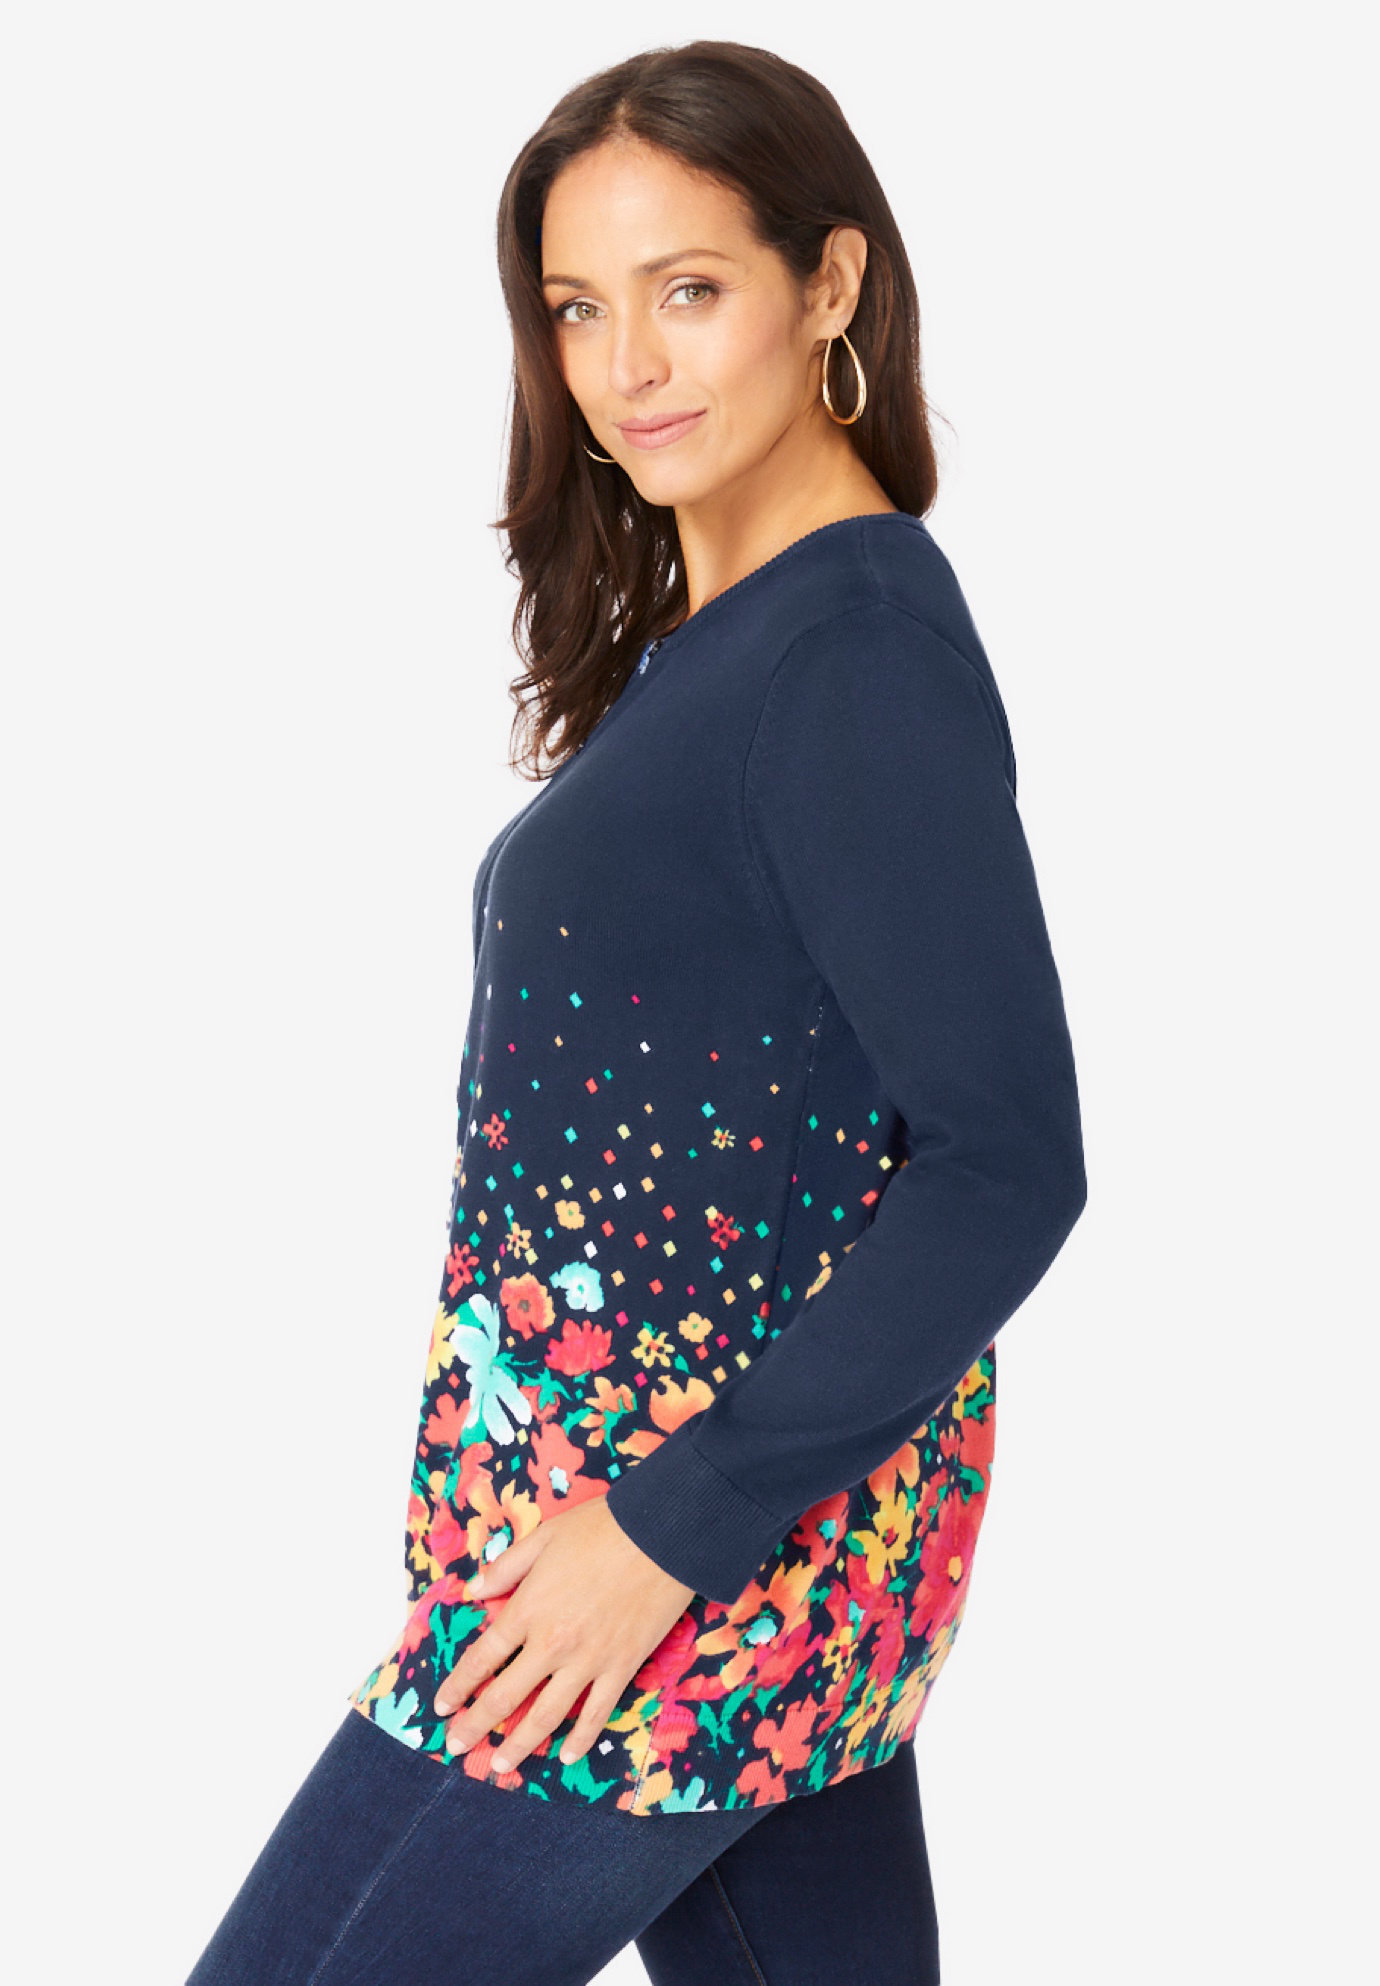 Jessica London Women's Plus Size Fine Gauge Cardigan Sweater - image 4 of 6